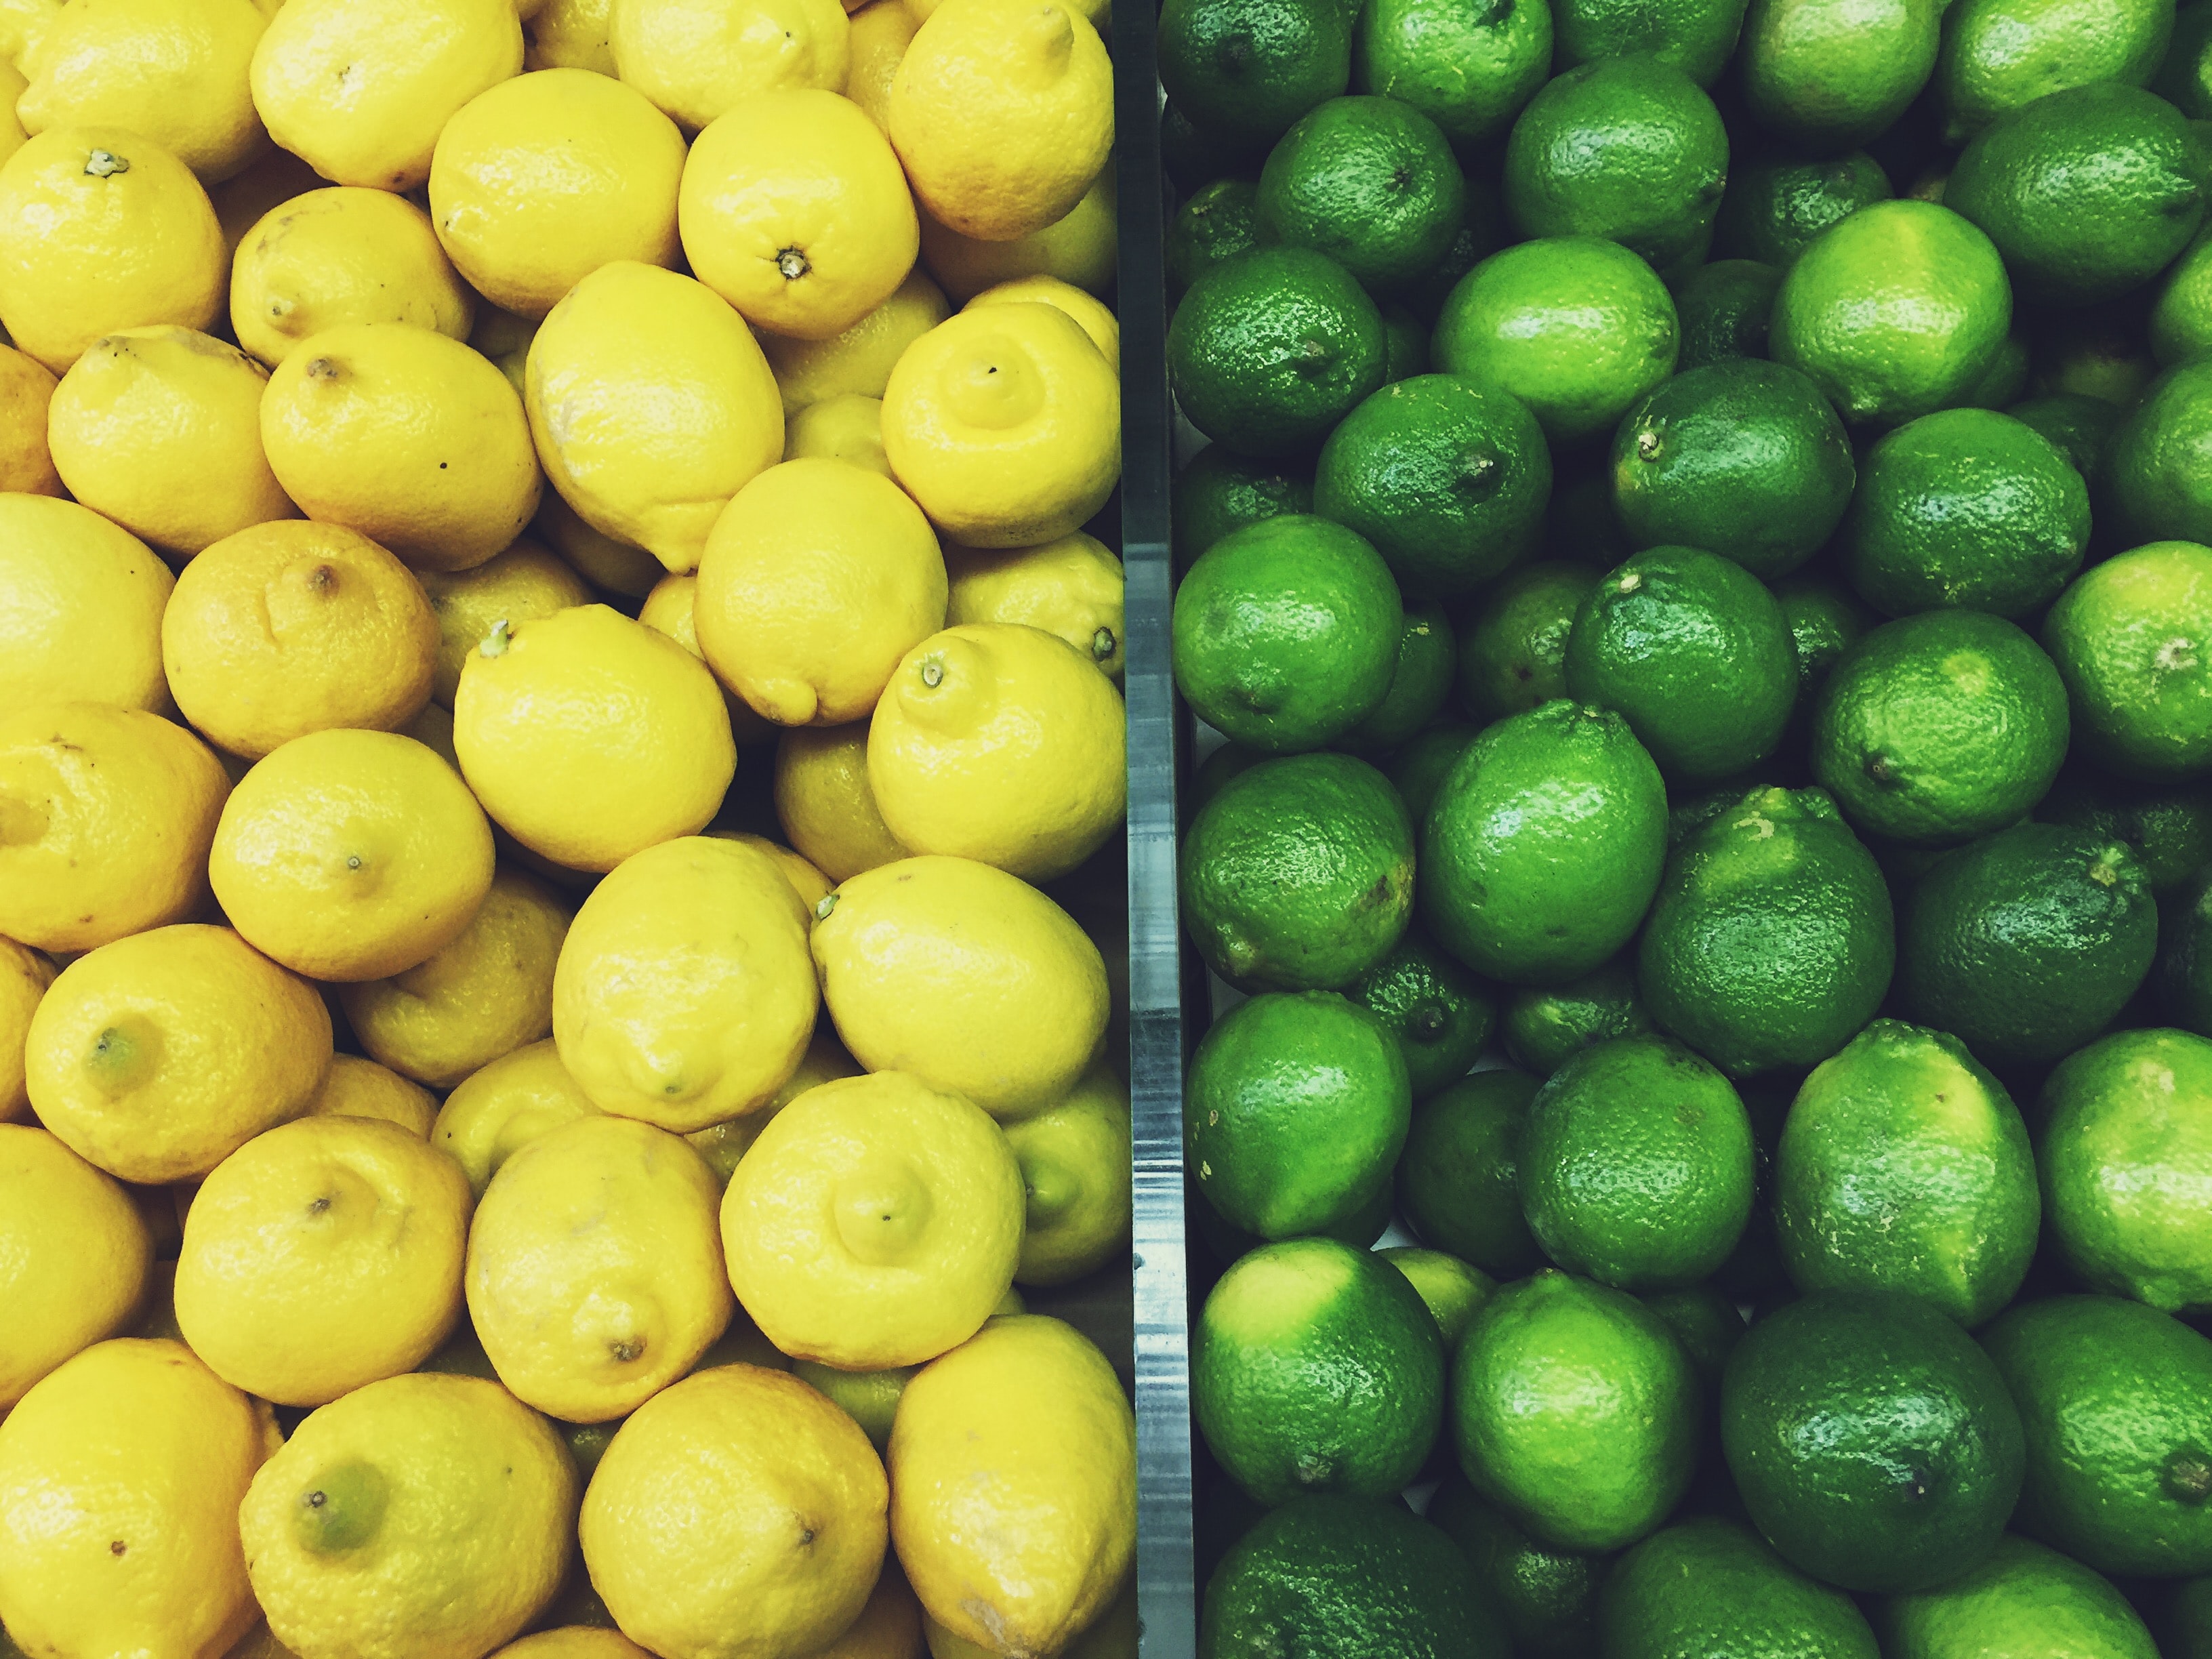 yellow and green lemons